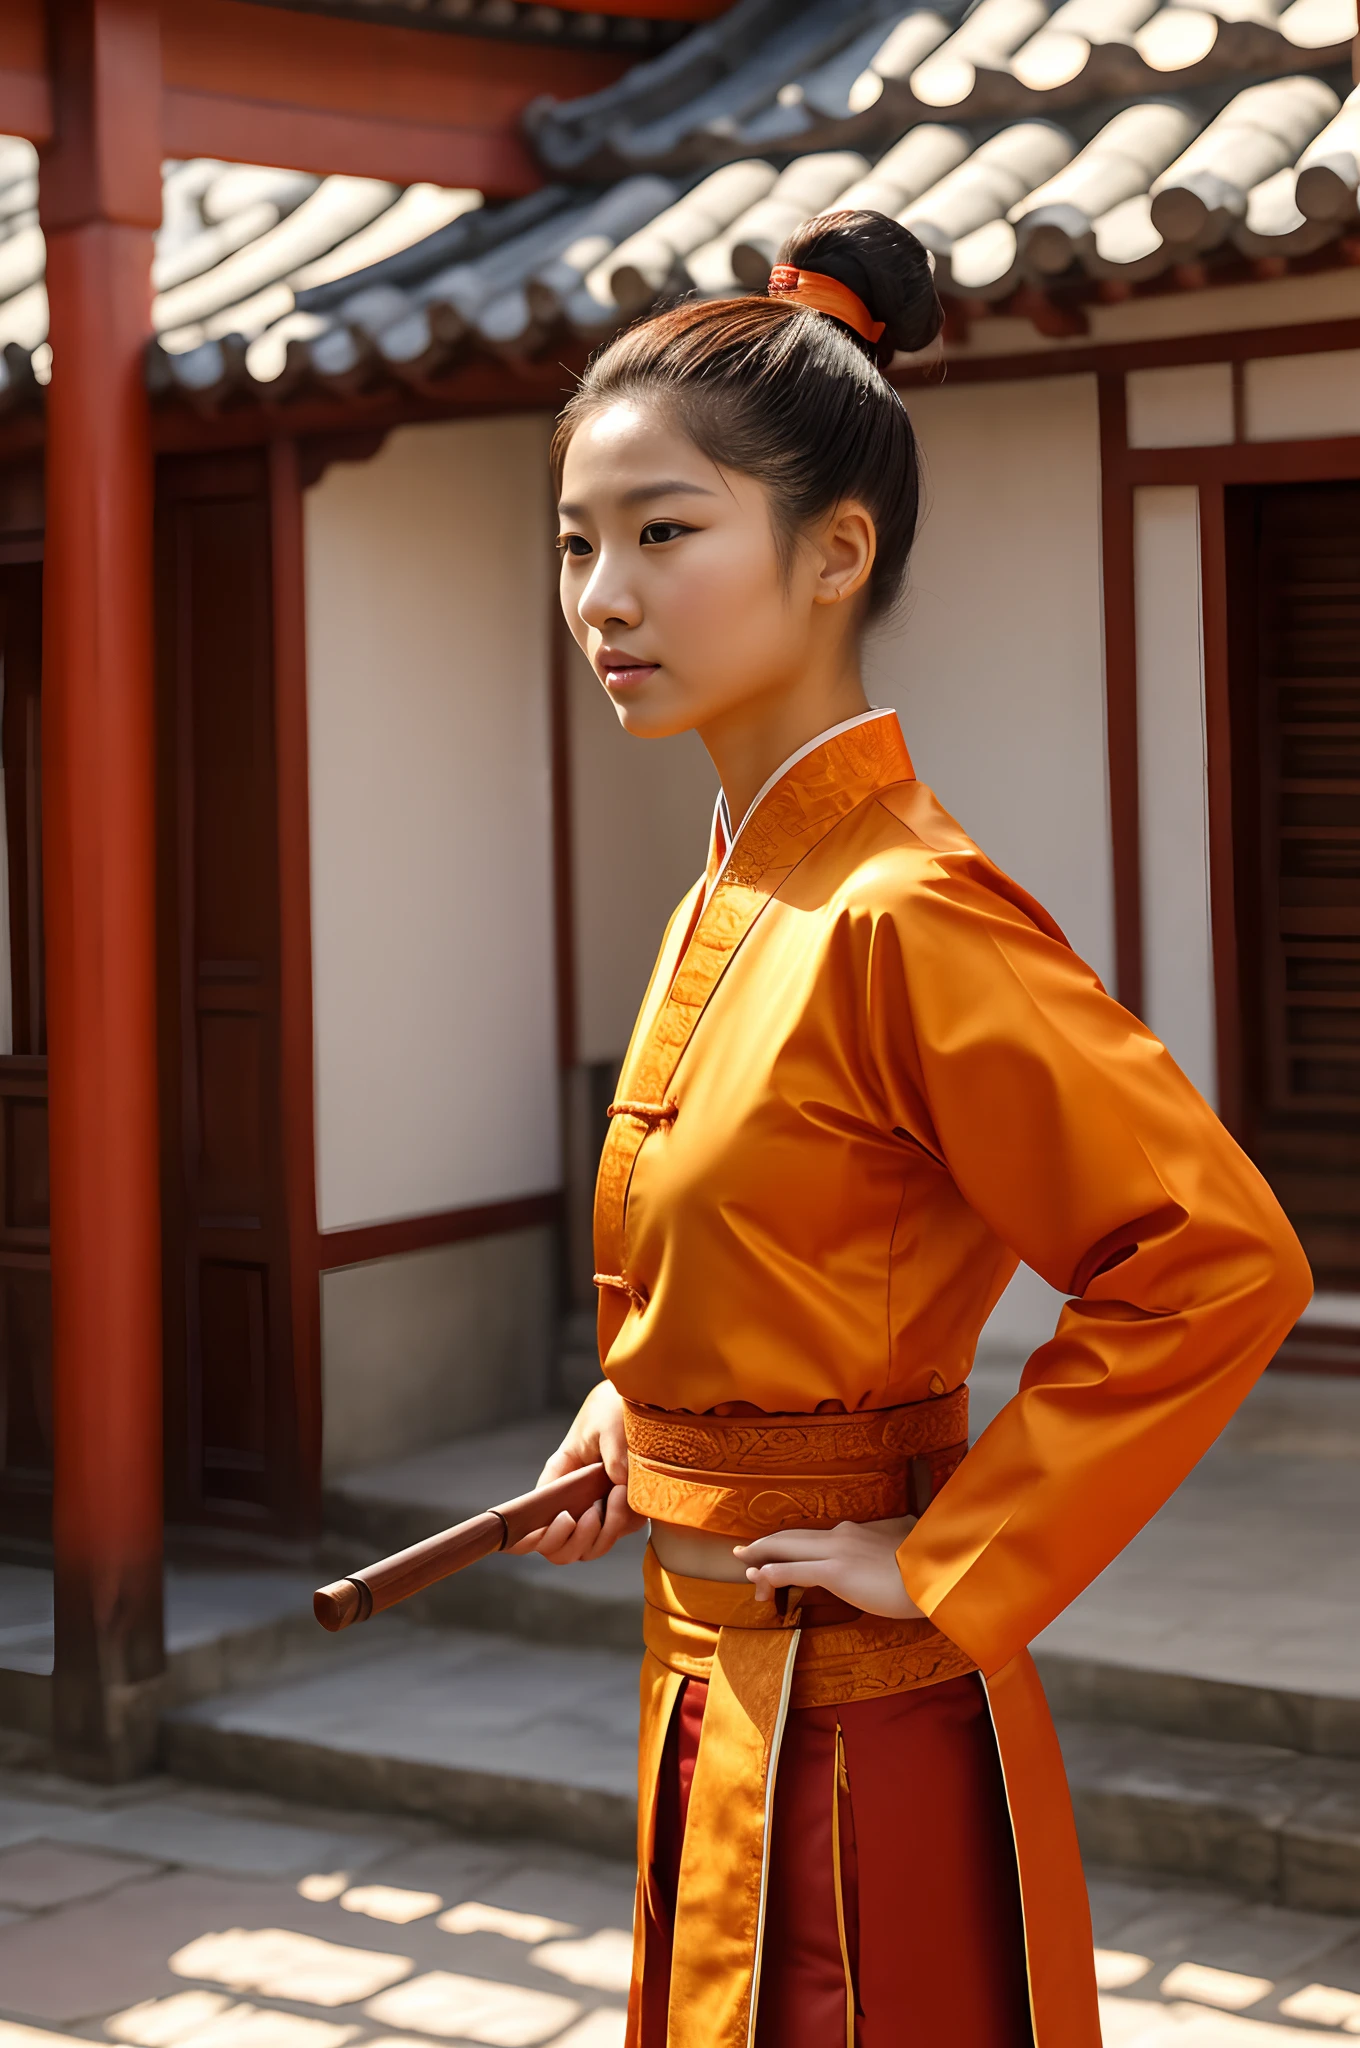 un personaje femenino humano, tipo chino,Moño,horquillas antiguas en la cabeza, edad alrededor de los 20, pechos pequeños, con un traje tradicional naranja de wudang, athletic, 165 cm de altura, 55 kilos de peso, Ojos cafés